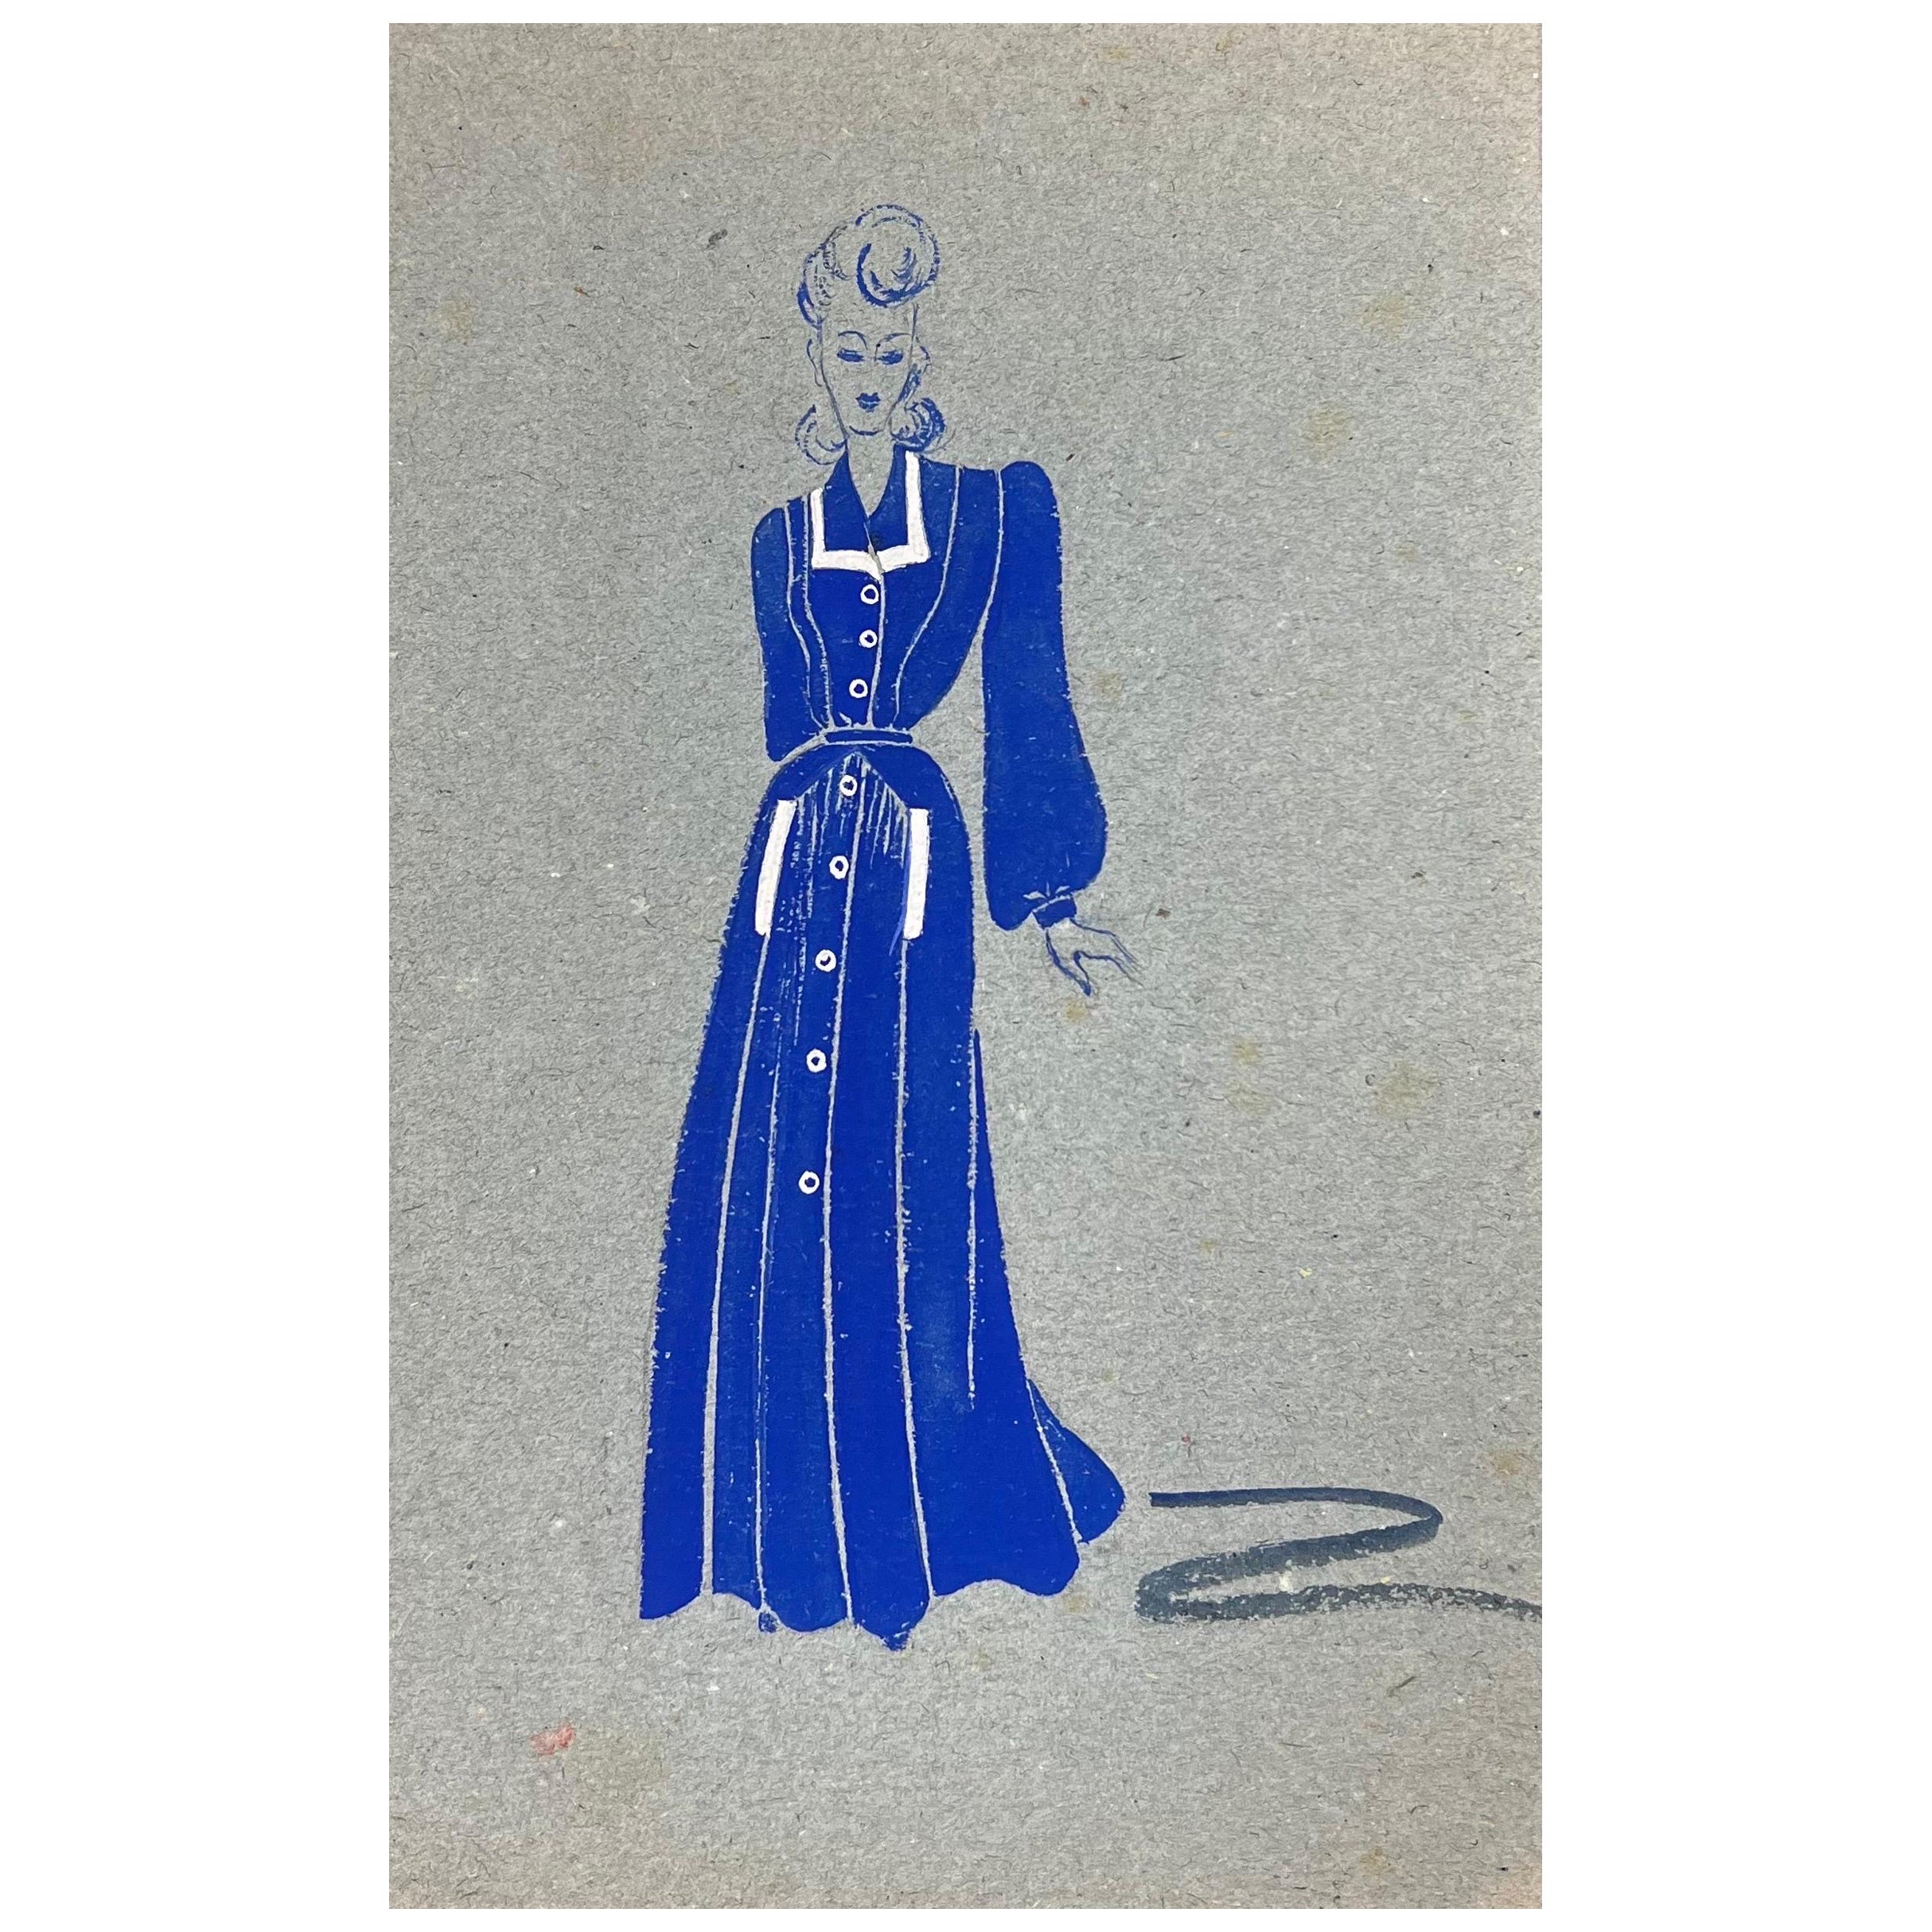 Mode Illustration der 1940er Jahre, Lady in Blue Kleid